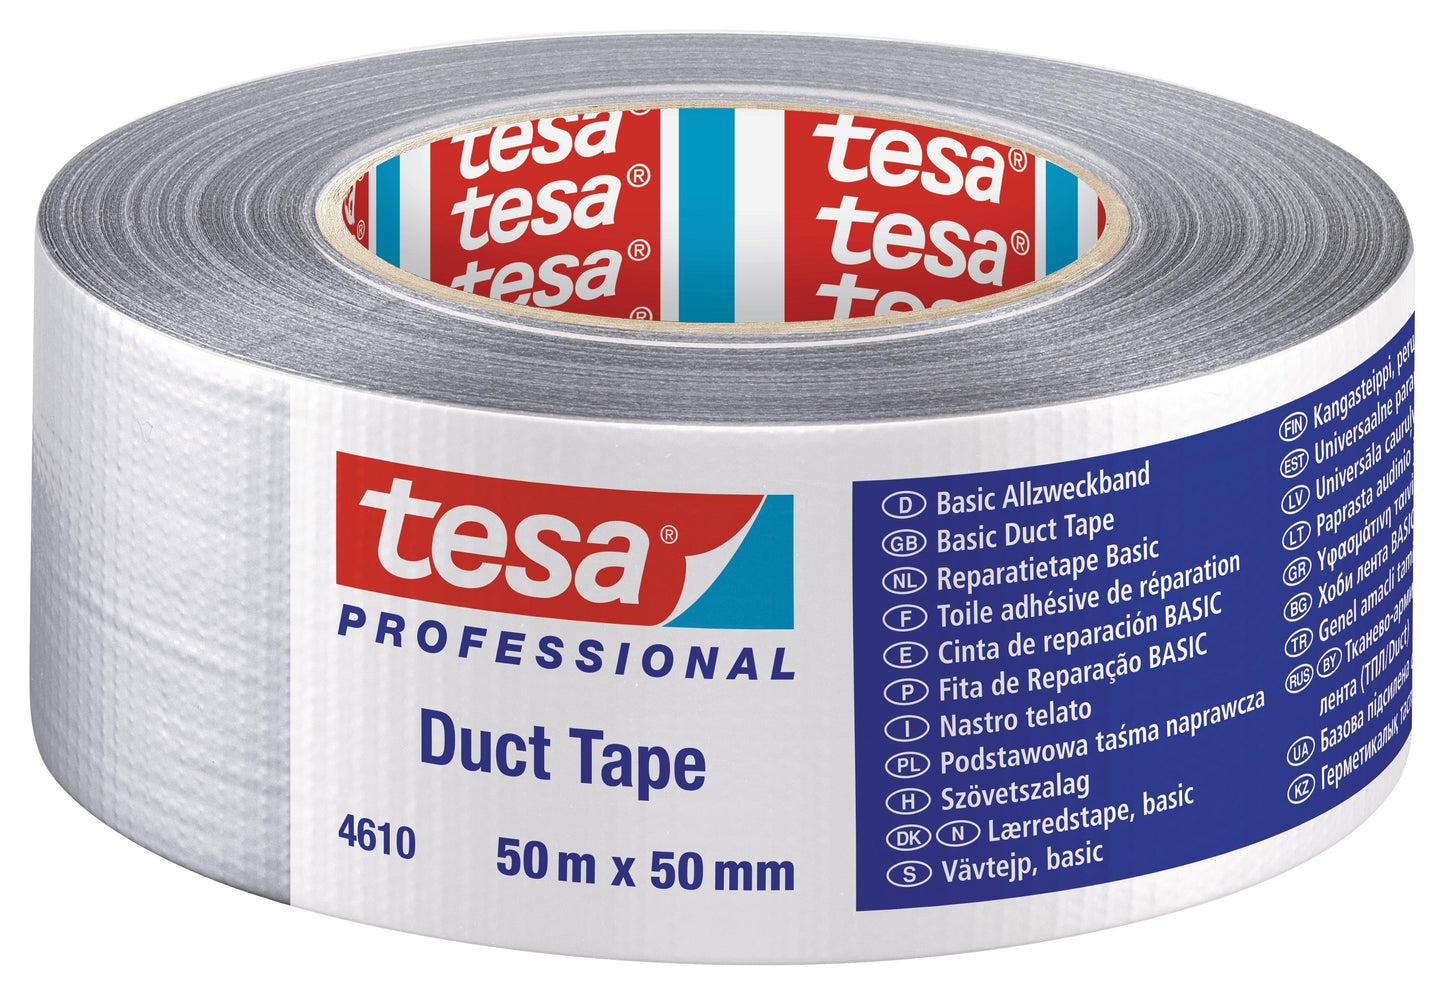 TESA Duct Tape 50m x 50mm Grey